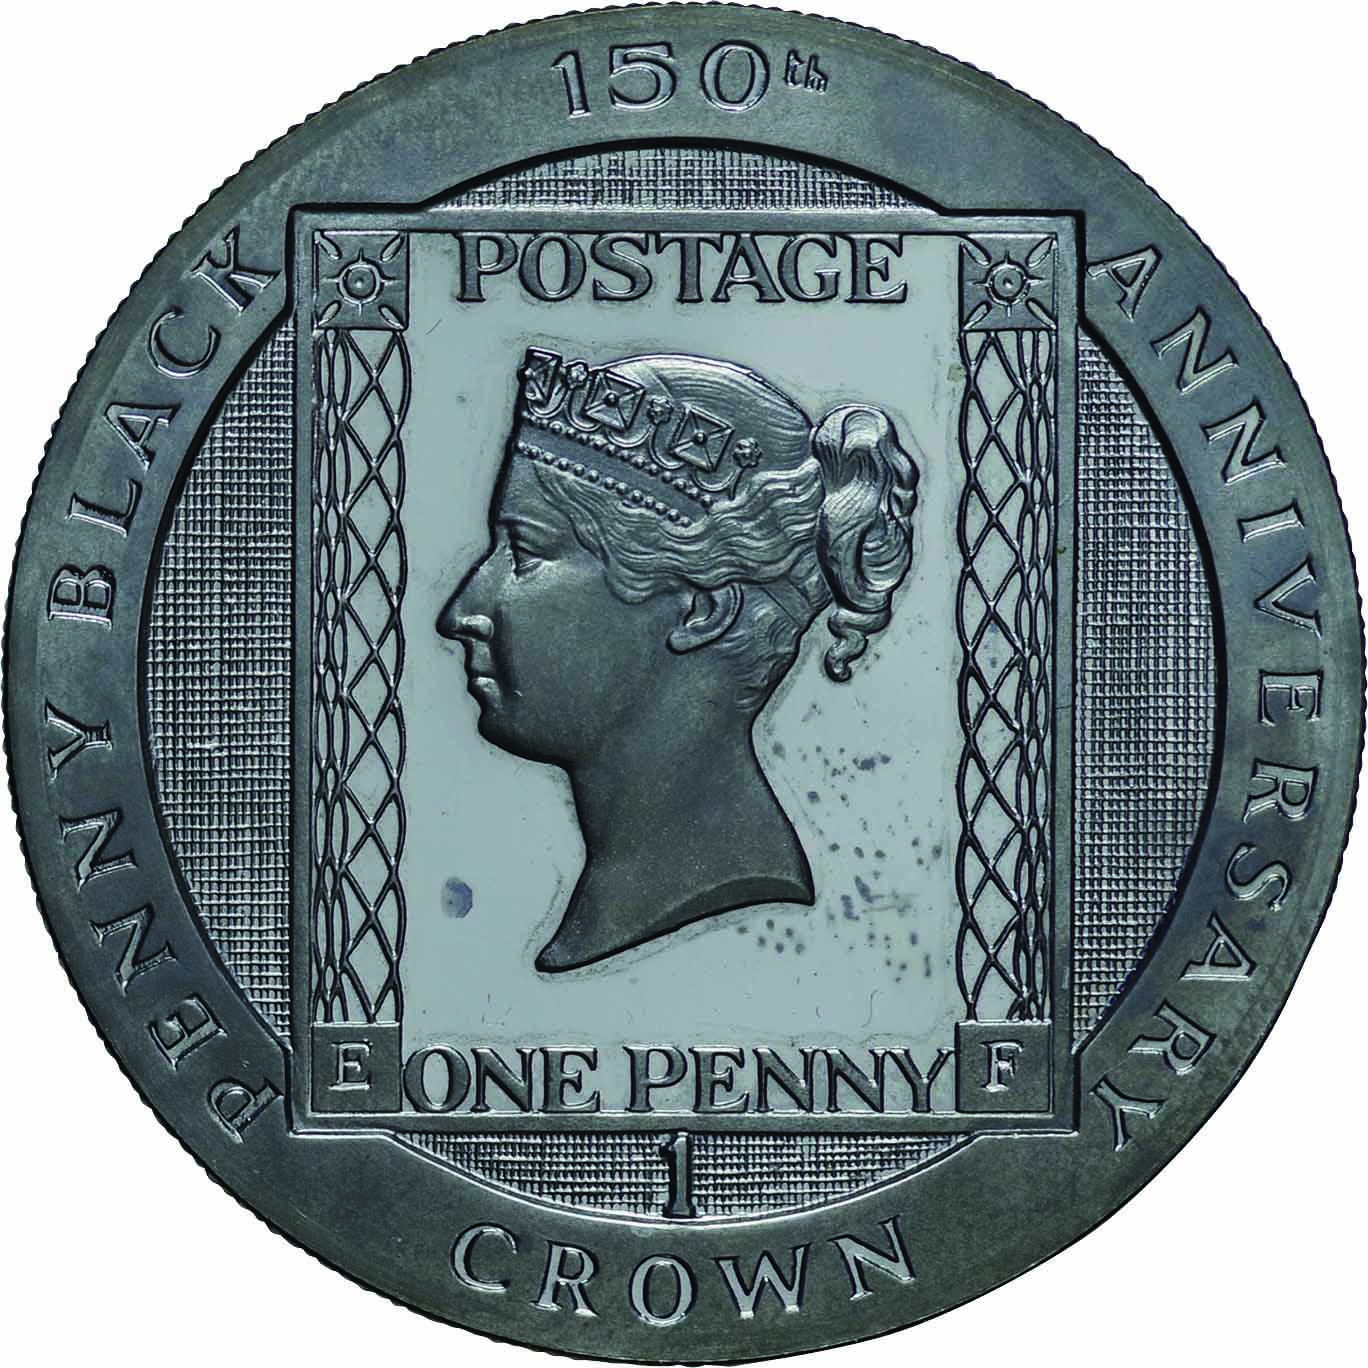 マン島 ダービー200周年記念プルーフ1クラウン銀貨 1980年 - 貨幣